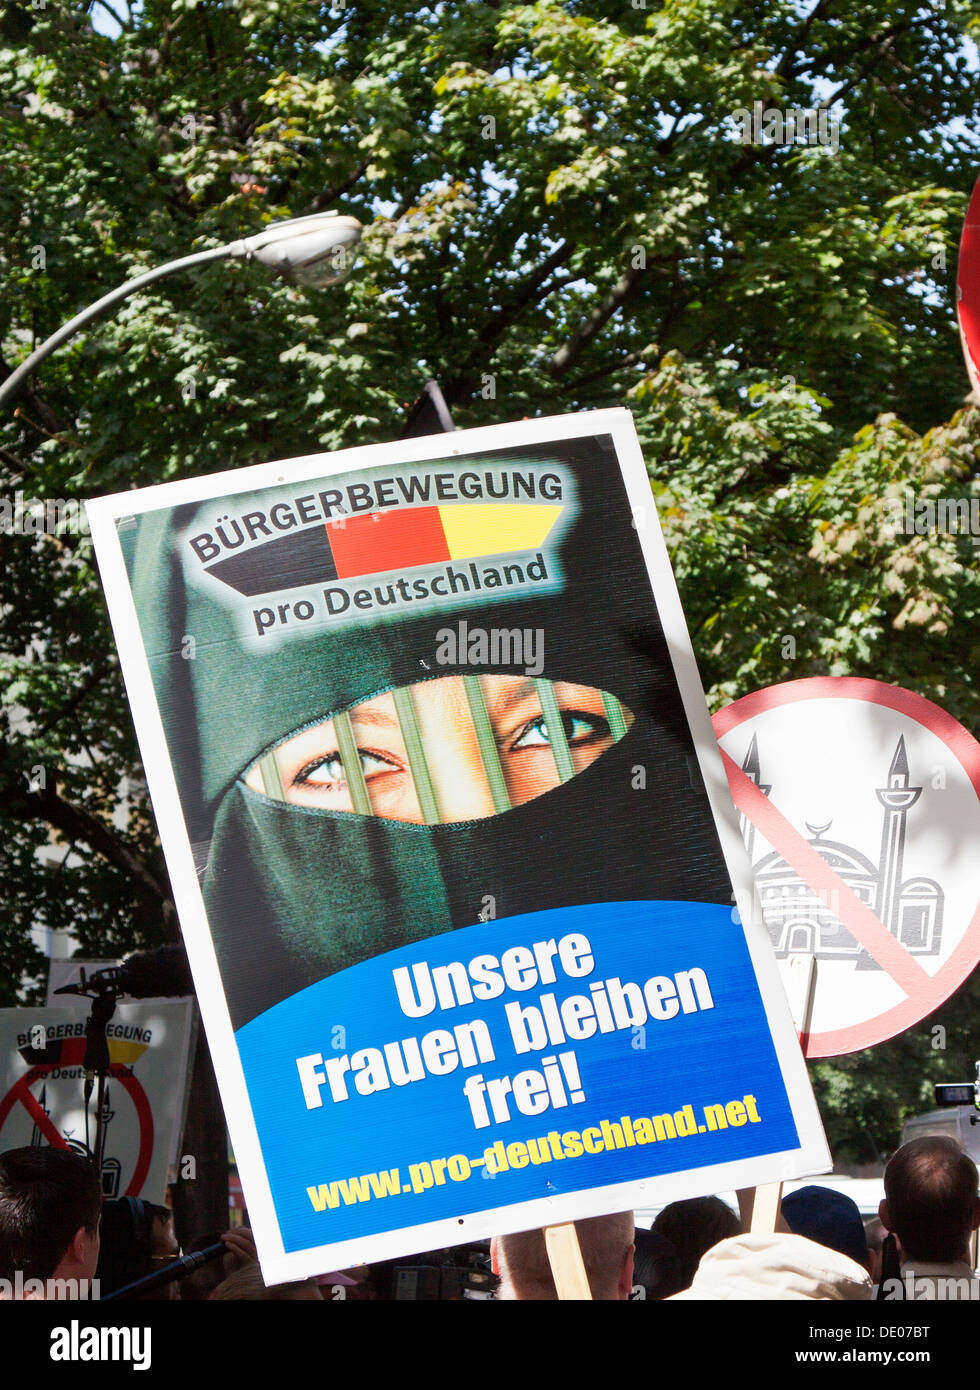 Segno di una donna velata lettering "Unsere Frauen bleiben frei!", Tedesco per 'La nostra donna restano liberi!", Pro Germania cittadini" Foto Stock